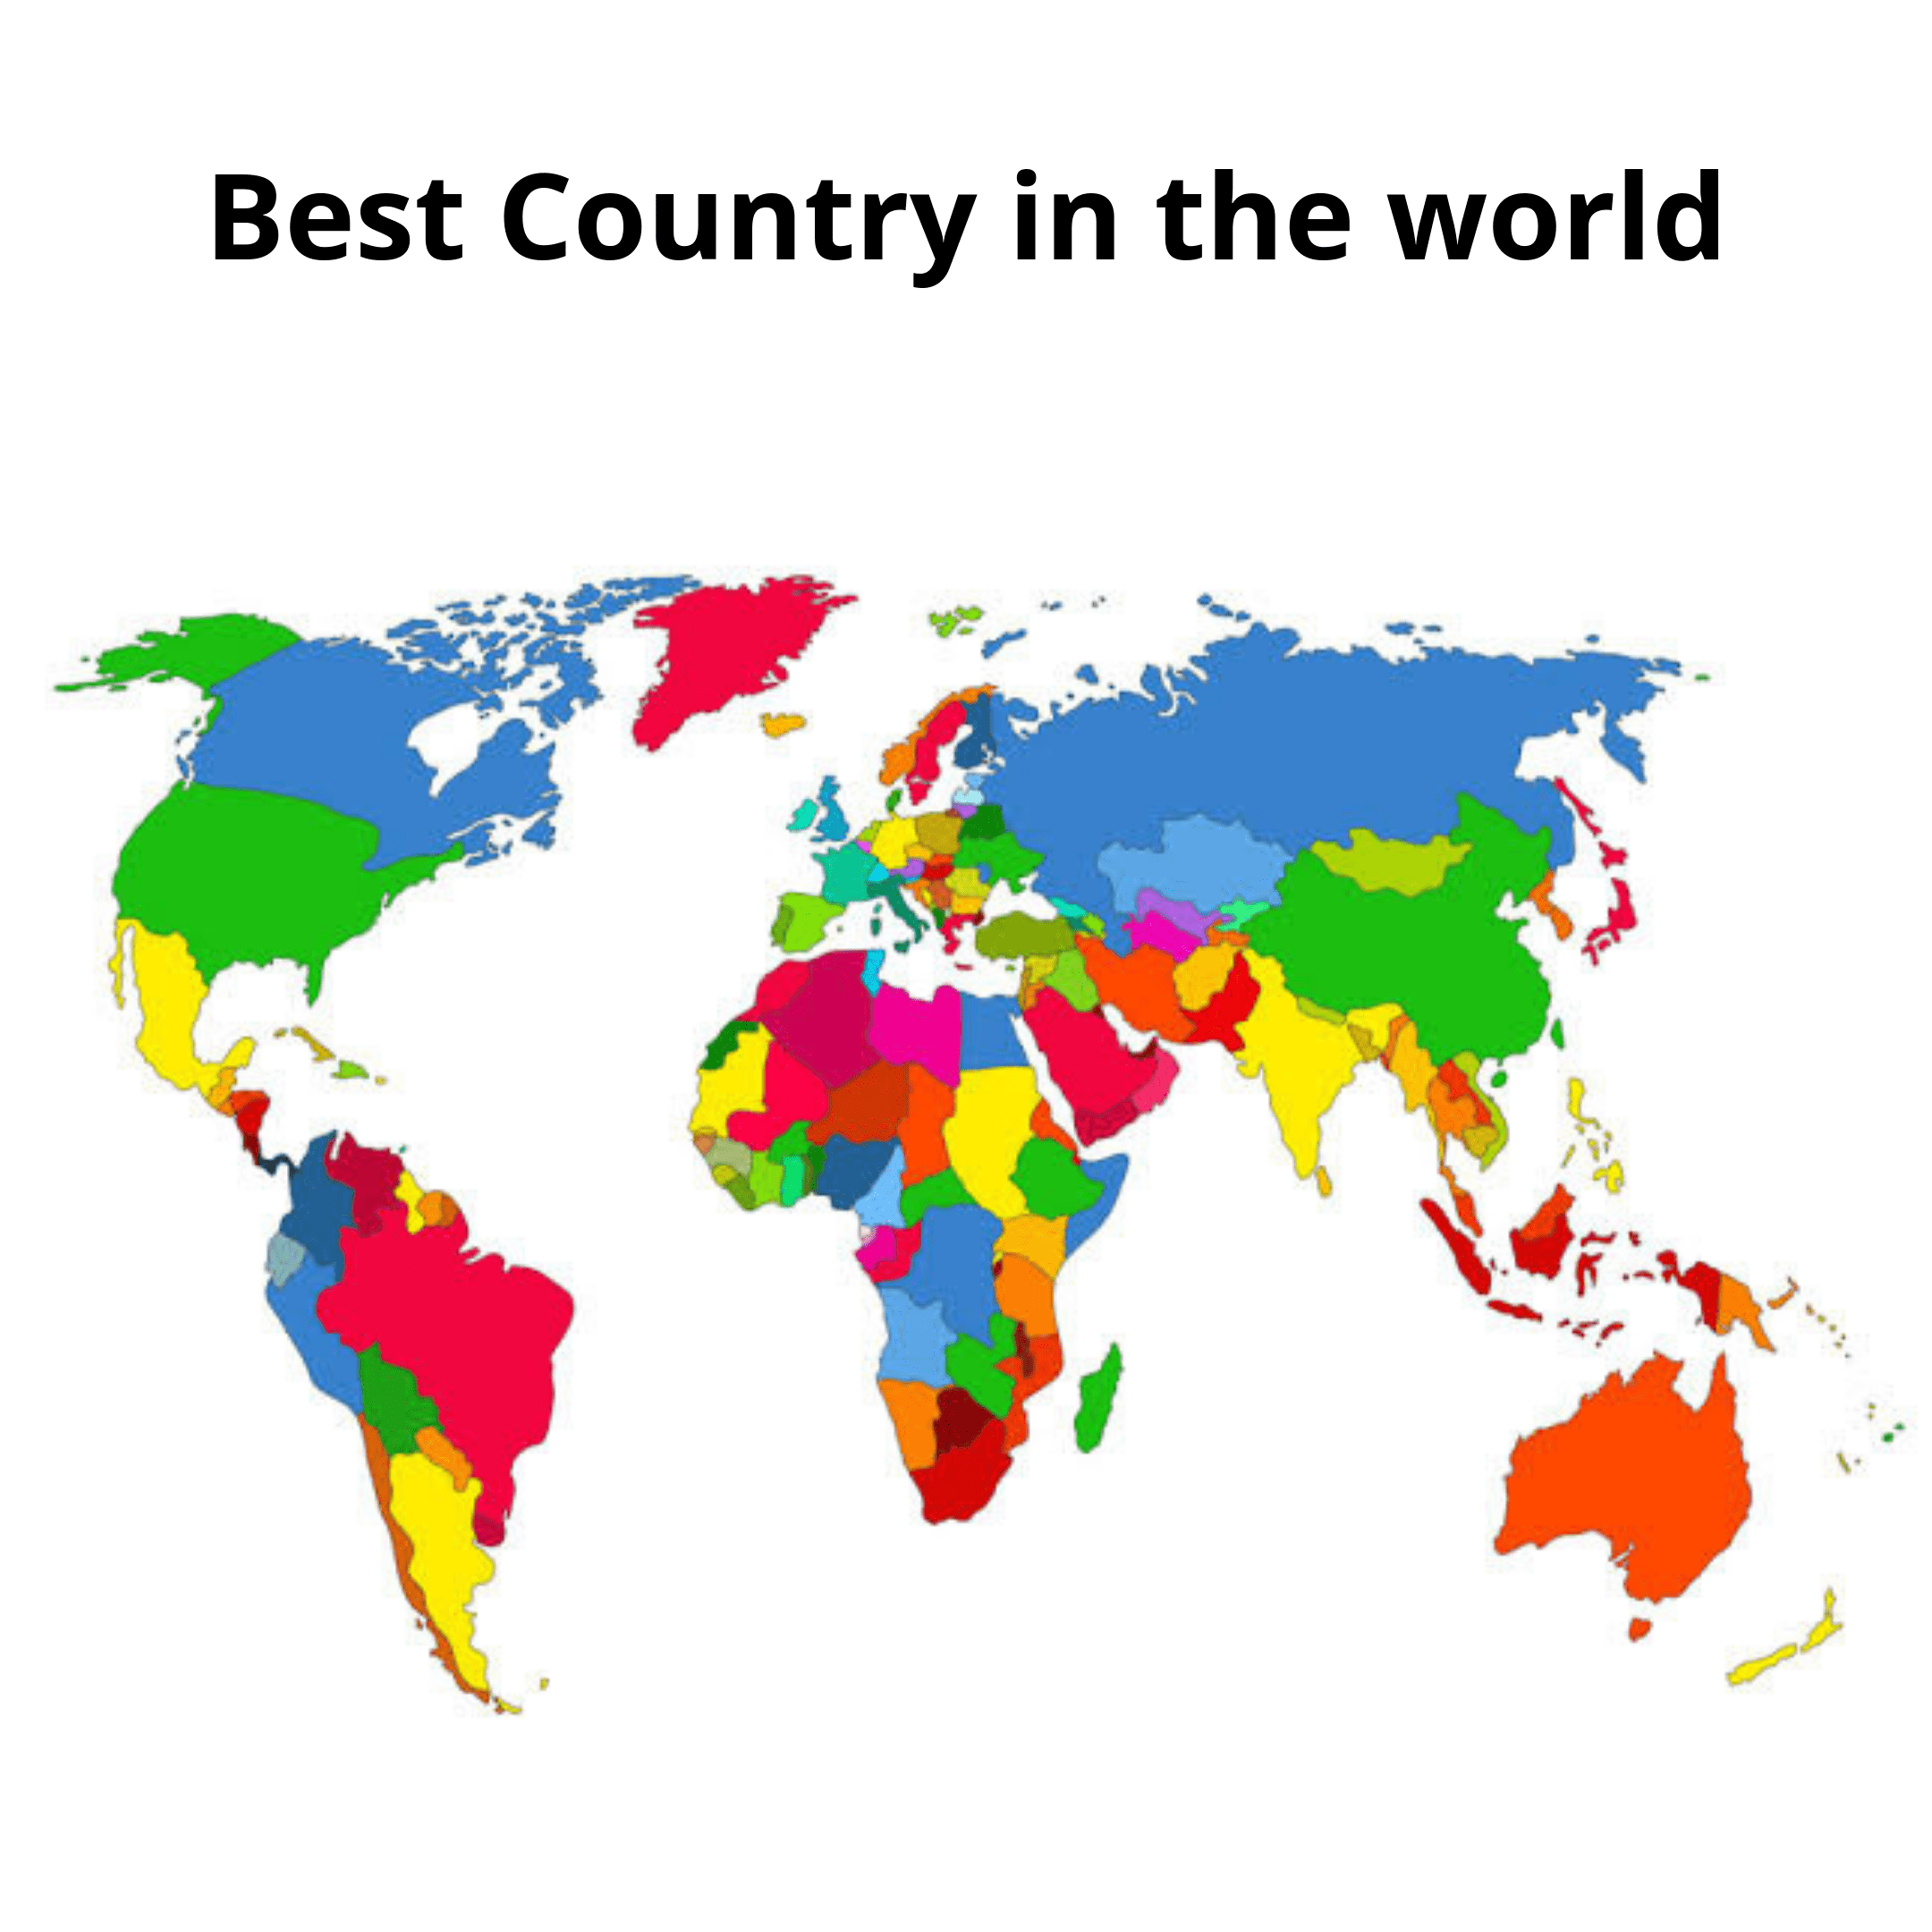 Among the countries